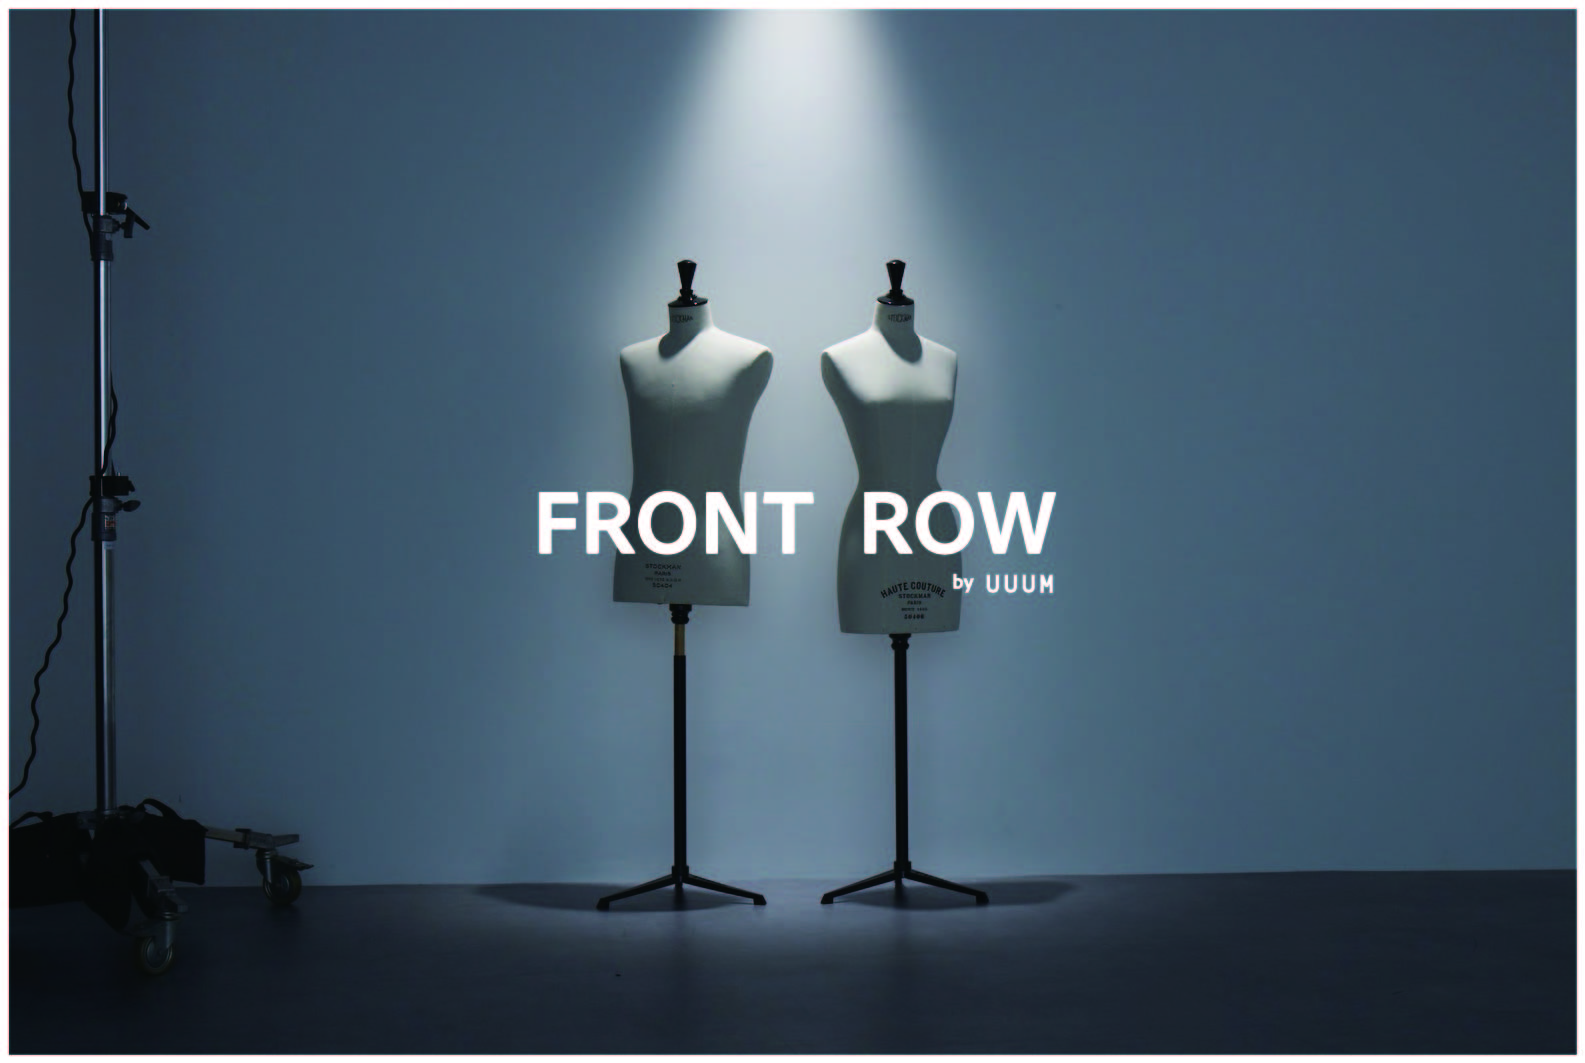 P2C Studioが運営する新しいファッションECサイト「FRONT ROW by UUUM」が4月12日オープン決定